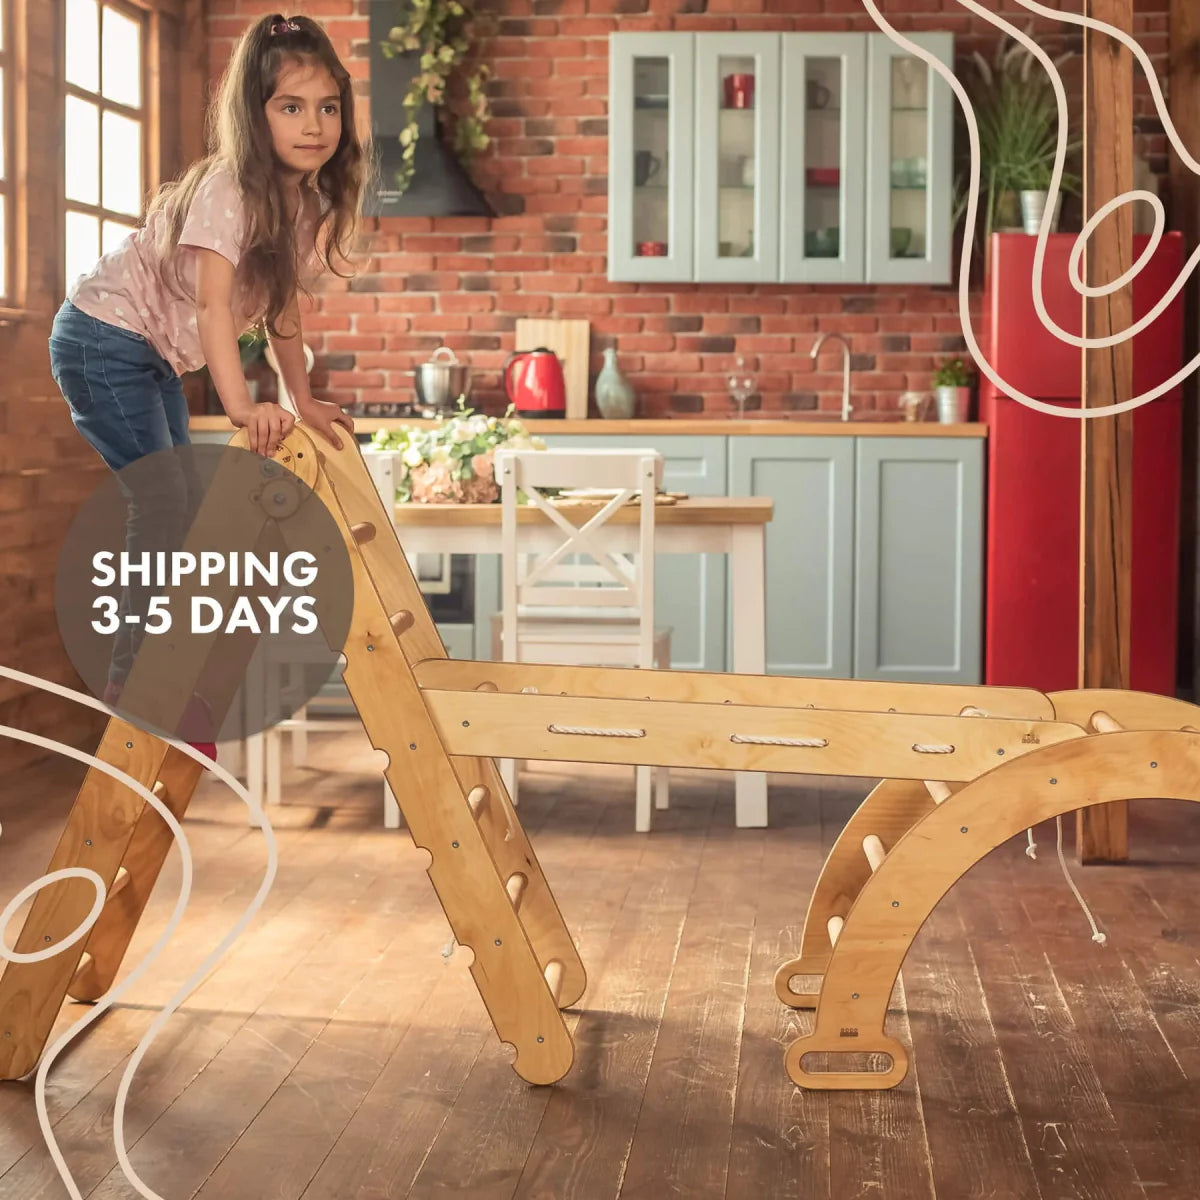 3in1 Montessori Climbing Set: Triangle Ladder + Wooden Arch + Slide Board – Beige NEW - Goodevas